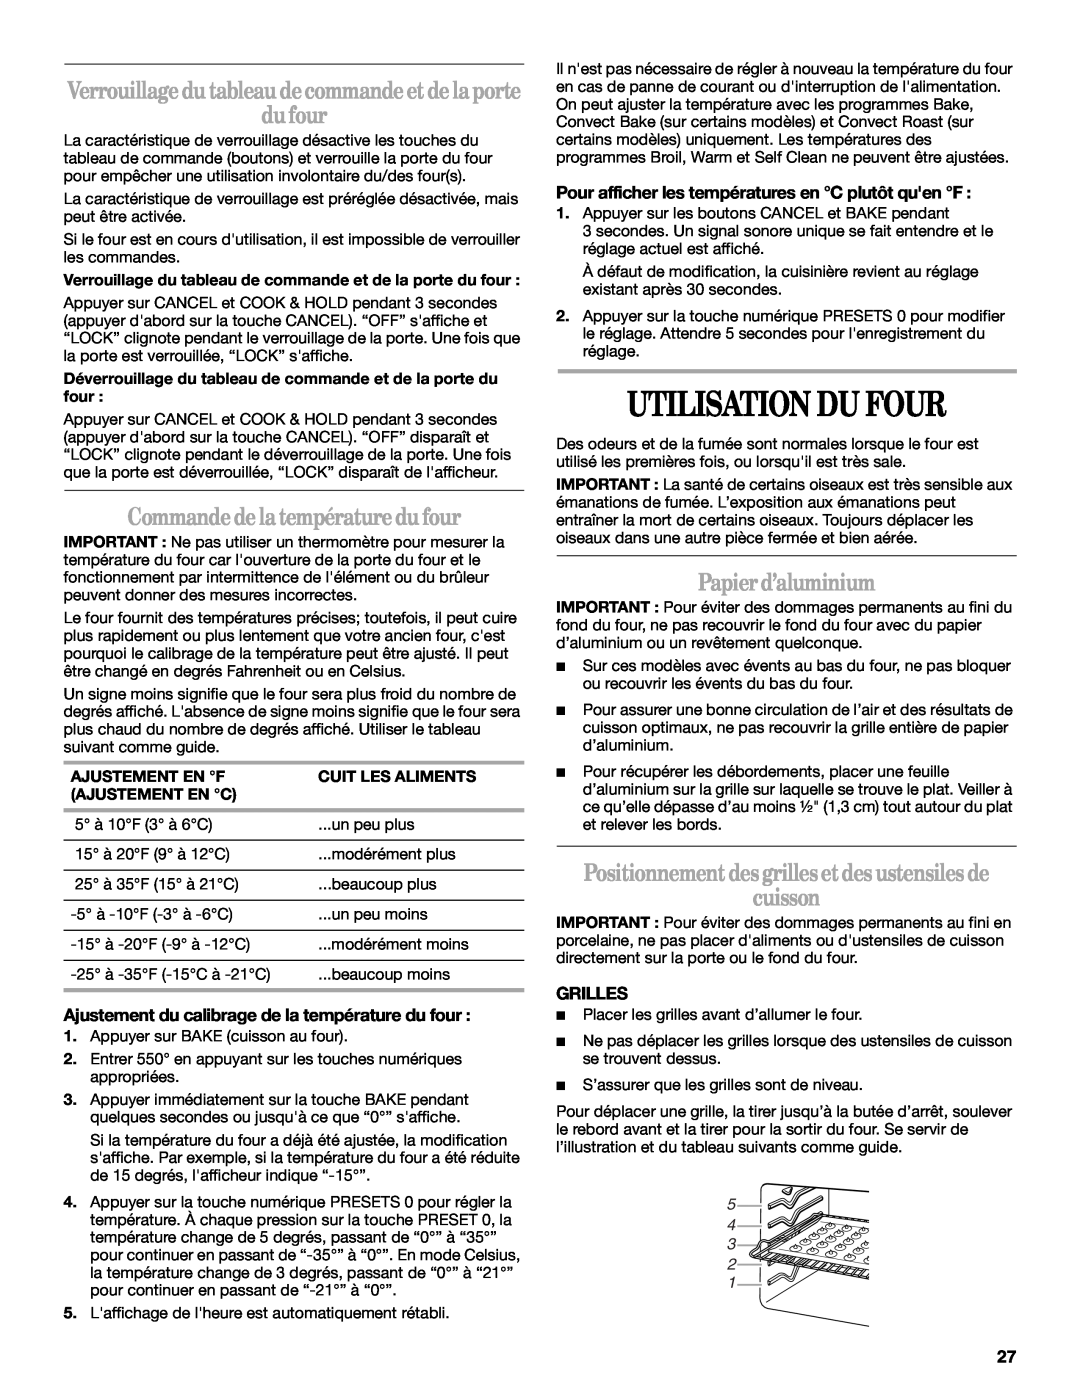 Whirlpool GY399LXUB, GY399LXUQ manual Utilisation Du Four, Commandedelatempératuredufour, Papierd’aluminium, Grilles 